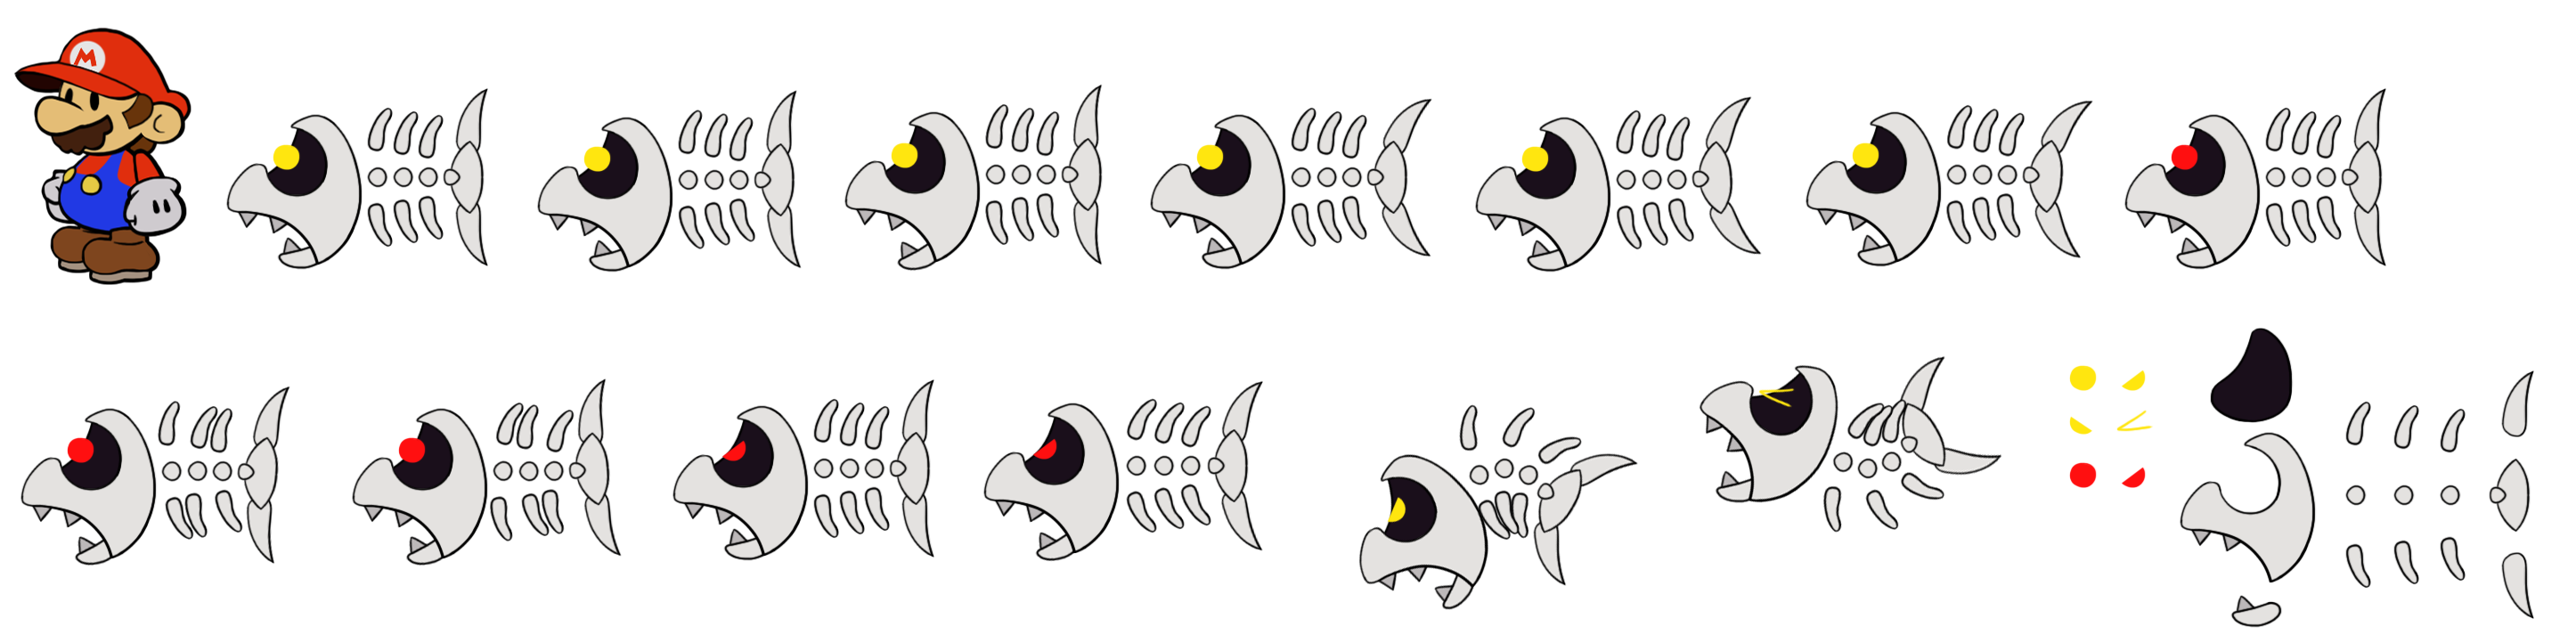 Mario Customs - Fish Bones (Paper Mario-Style)